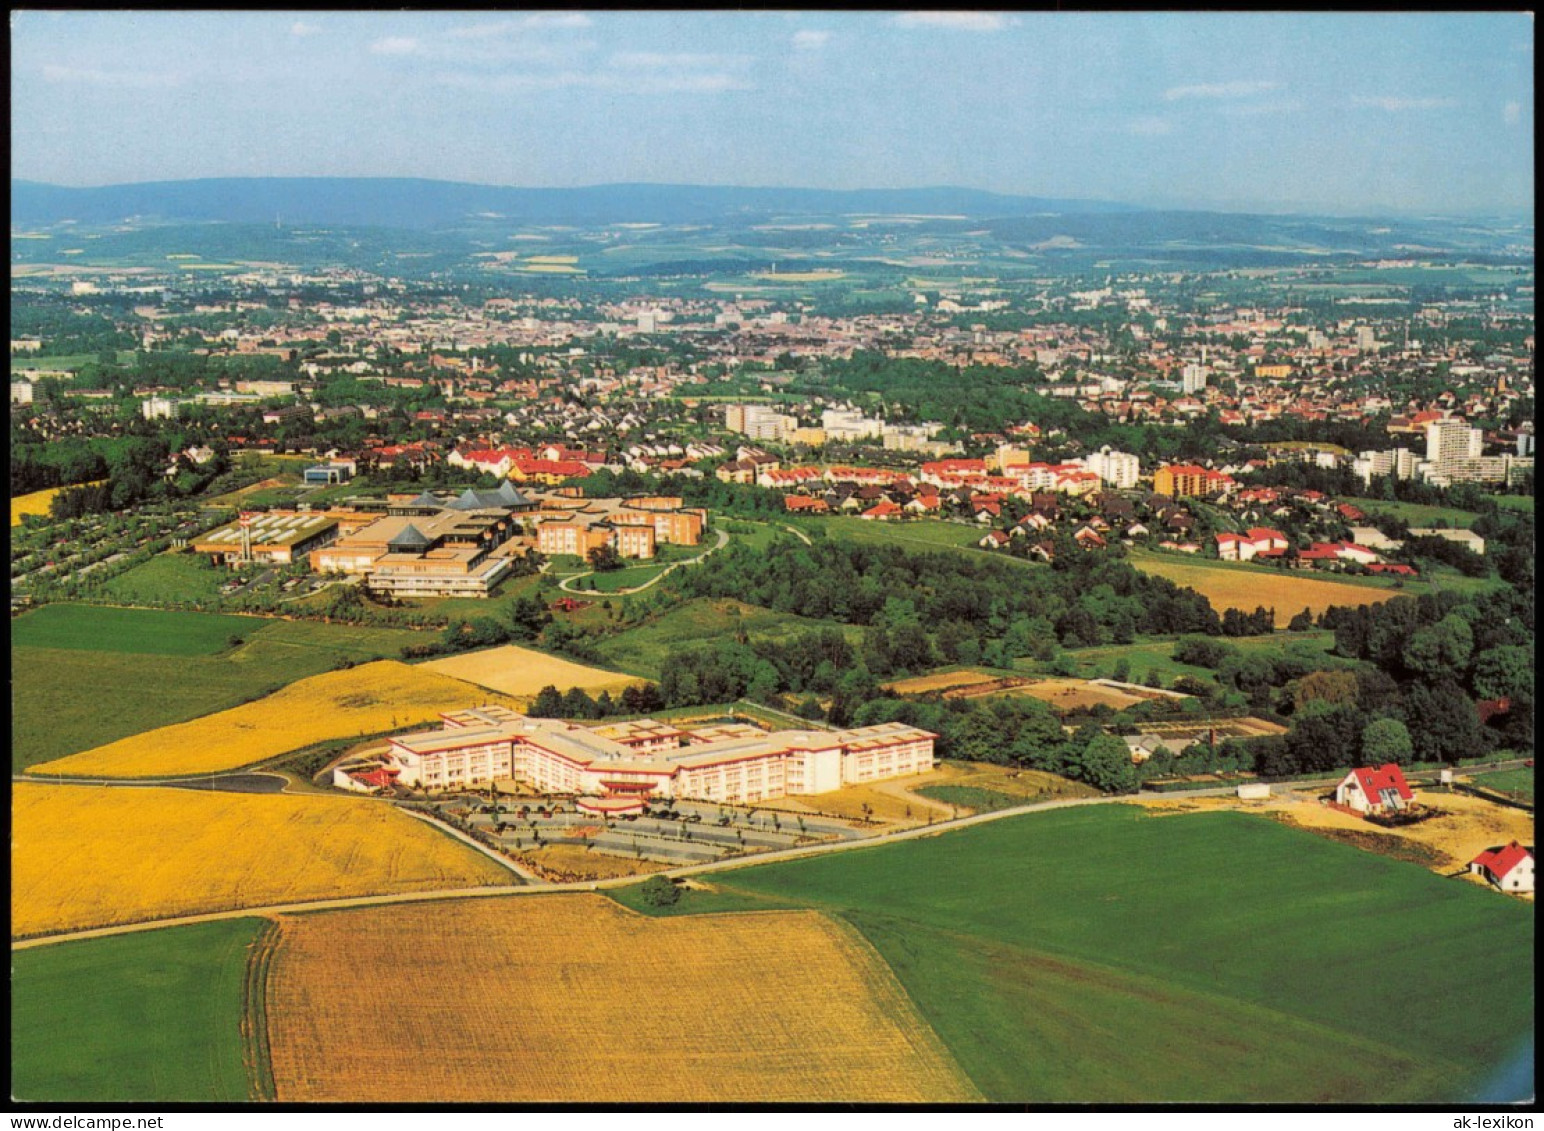 Bayreuth Luftbild Mit Klinikum Und Reha-Zentrum Roter Hügel 1992 - Bayreuth